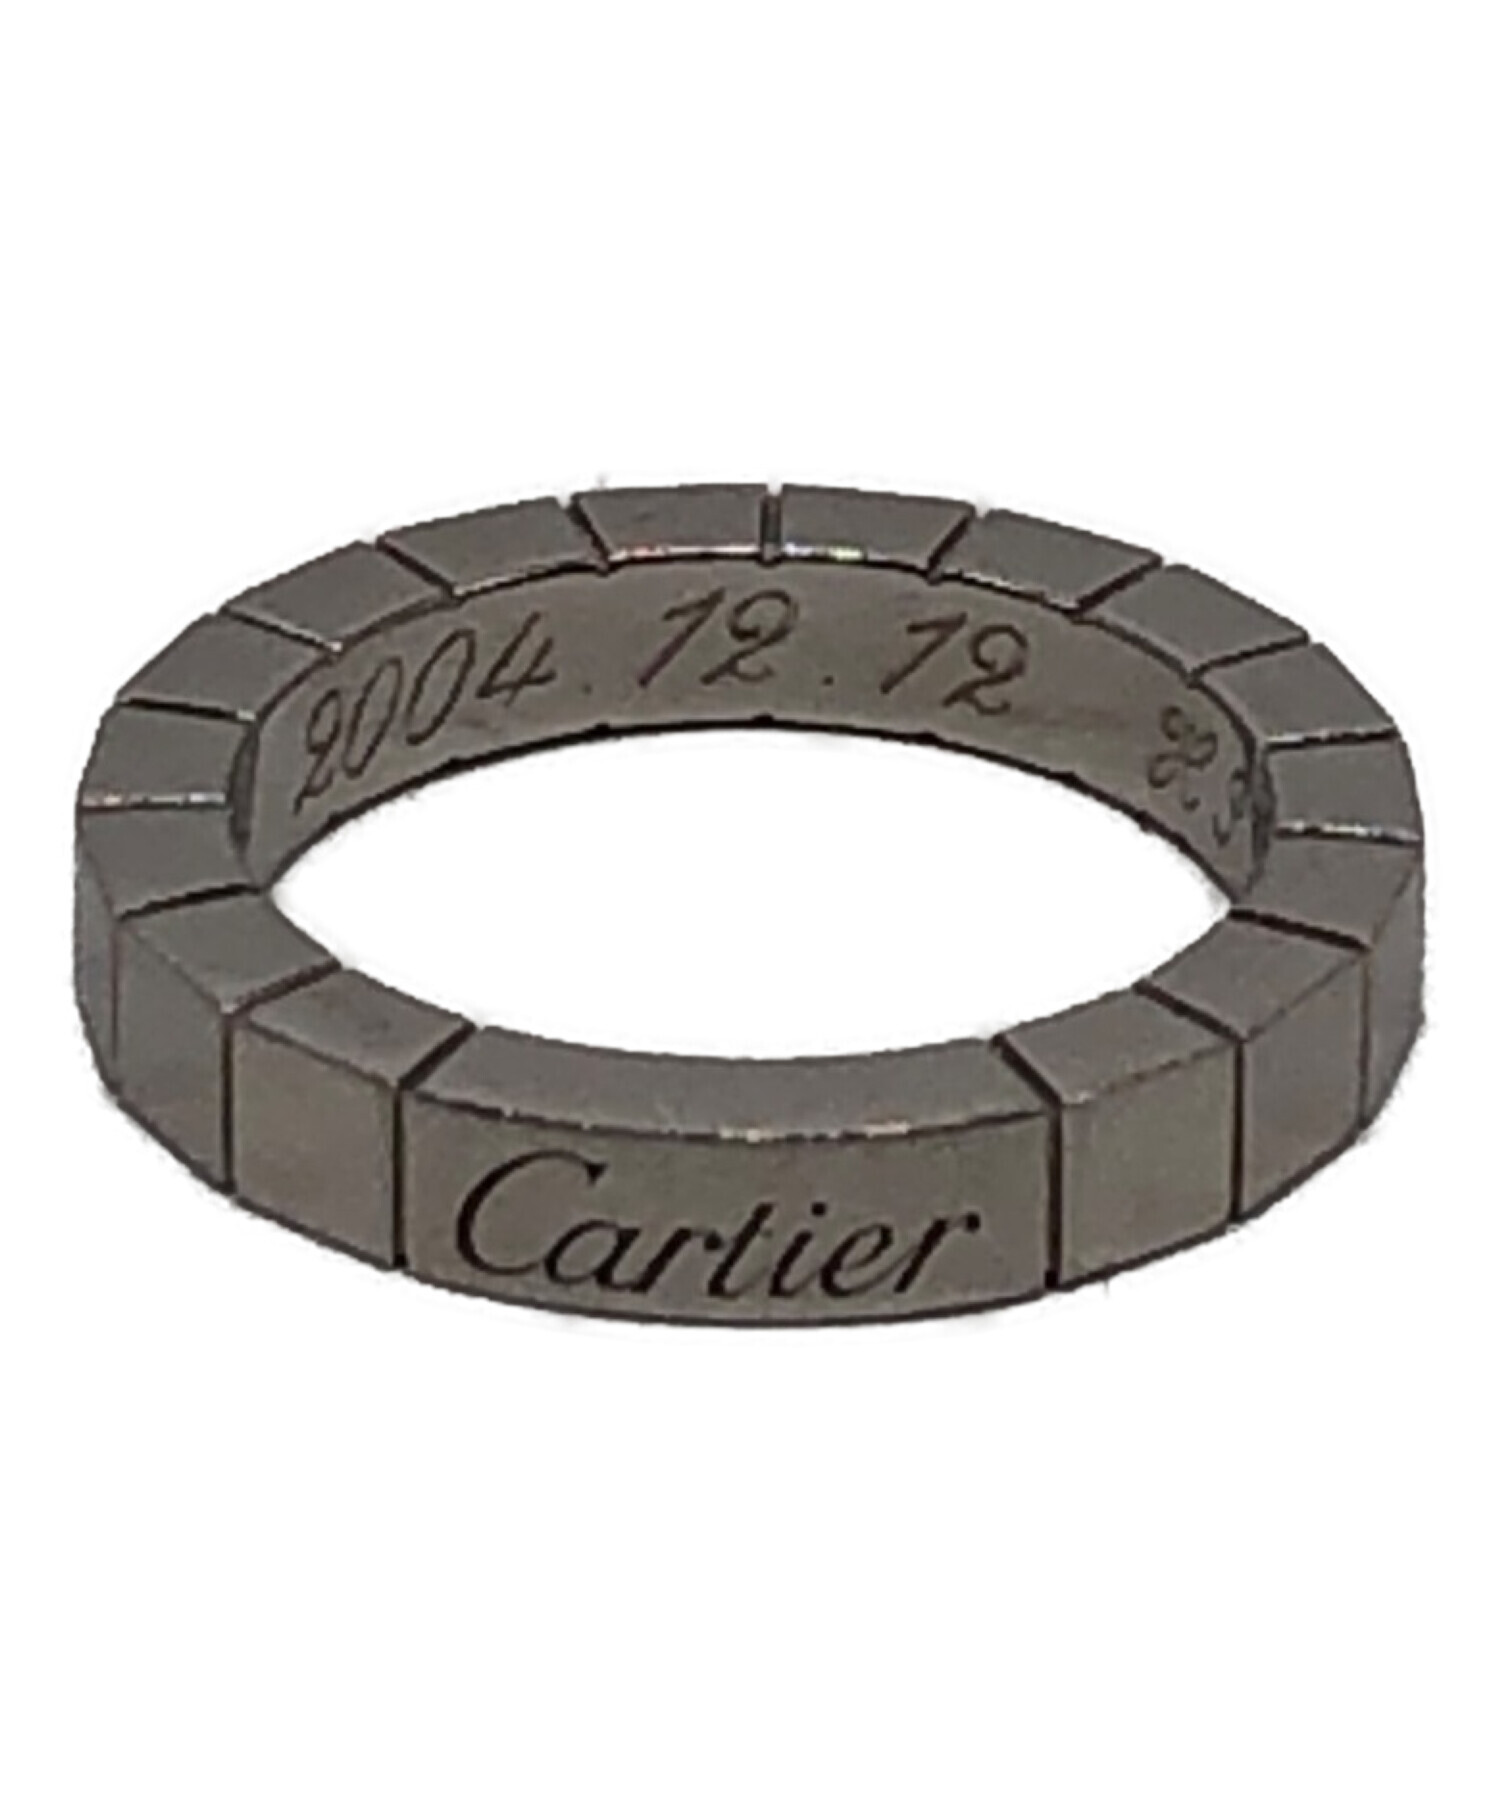 Cartier (カルティエ) ラニエールリング サイズ:6号